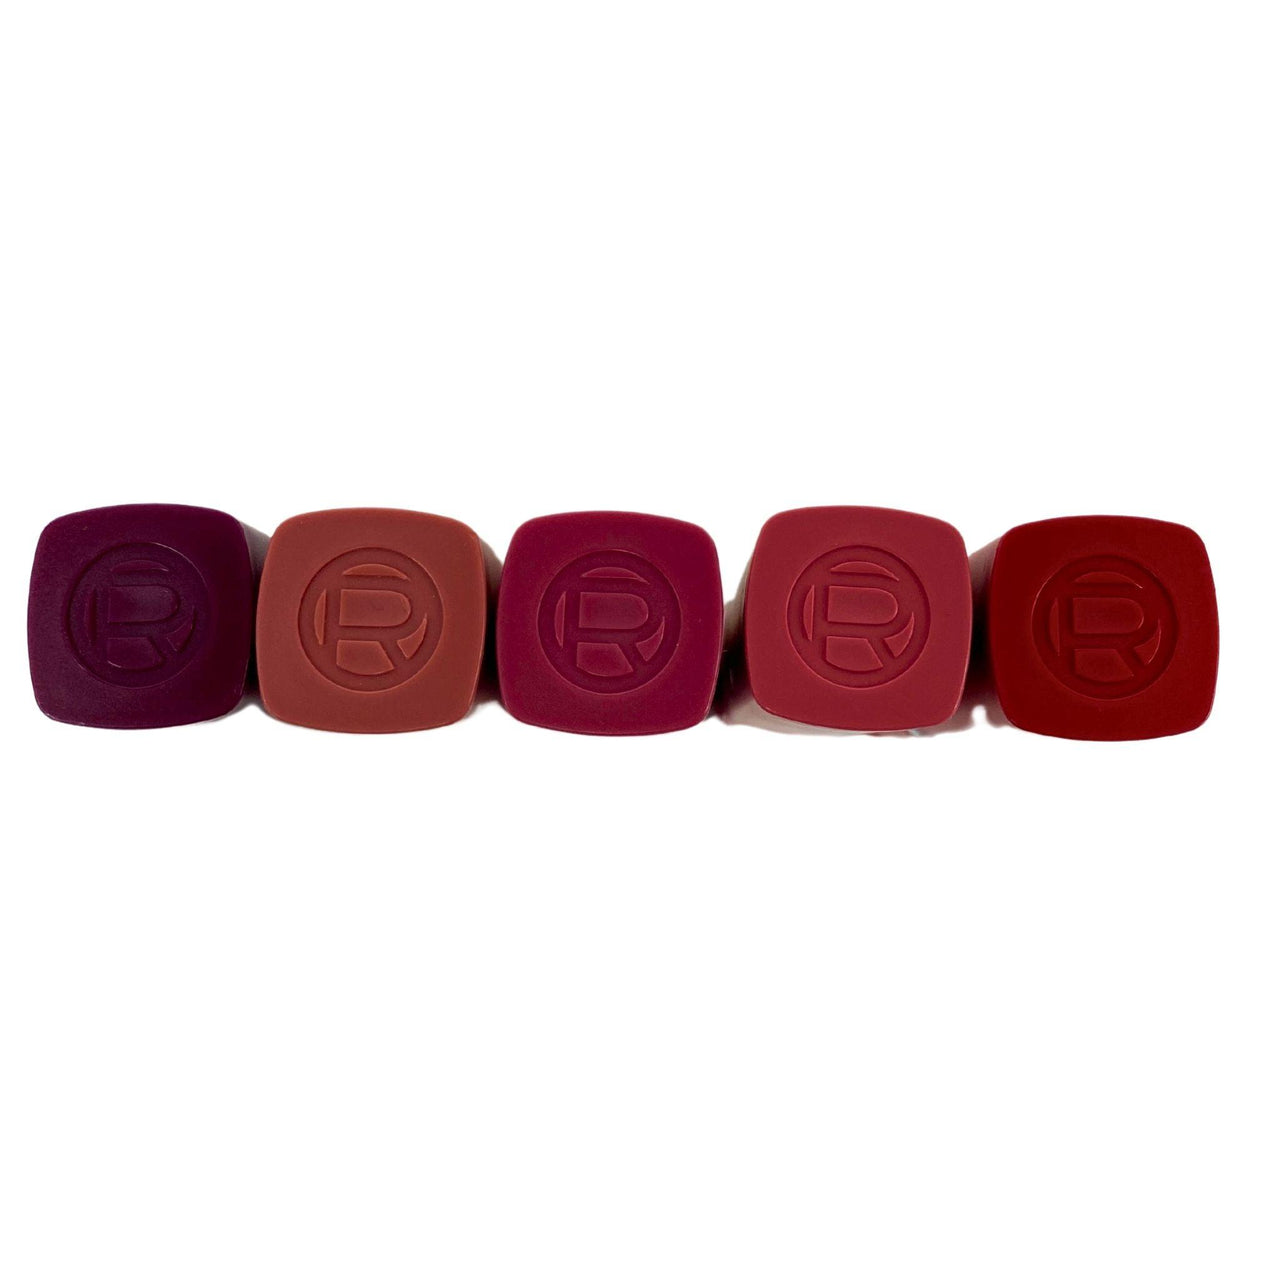 L'Oreal Paris Infallible Matte Resistance Lip Color 0.16OZ Assorted Mix (50 Pcs Lot) - Discount Wholesalers Inc